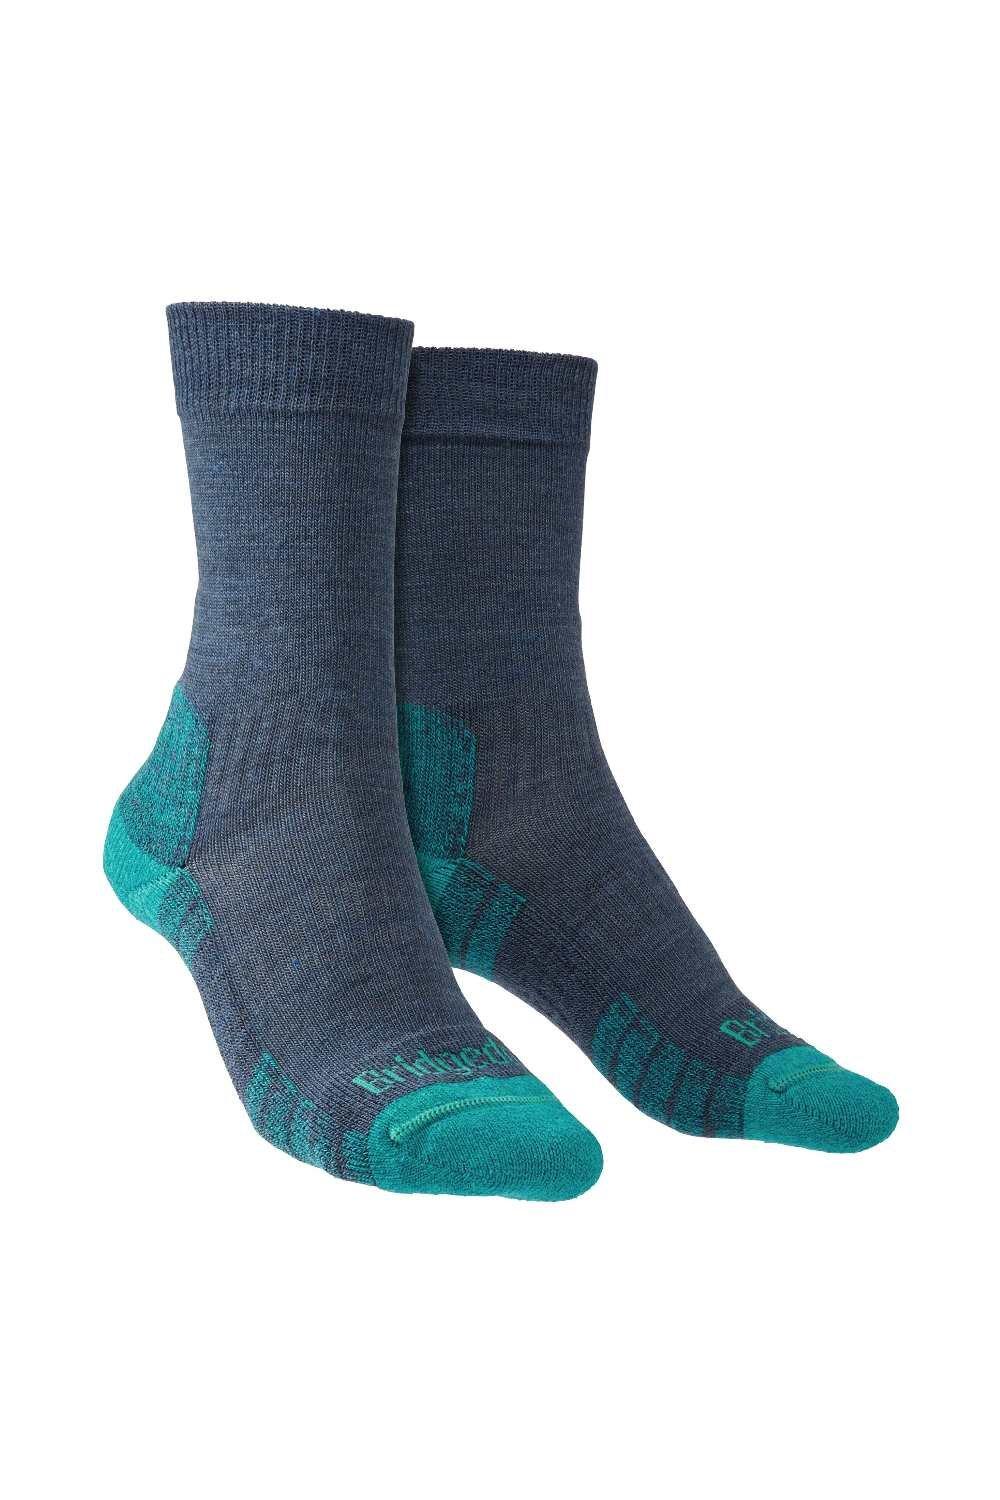 Merino Wool Hiking Boot Lightweight Socks